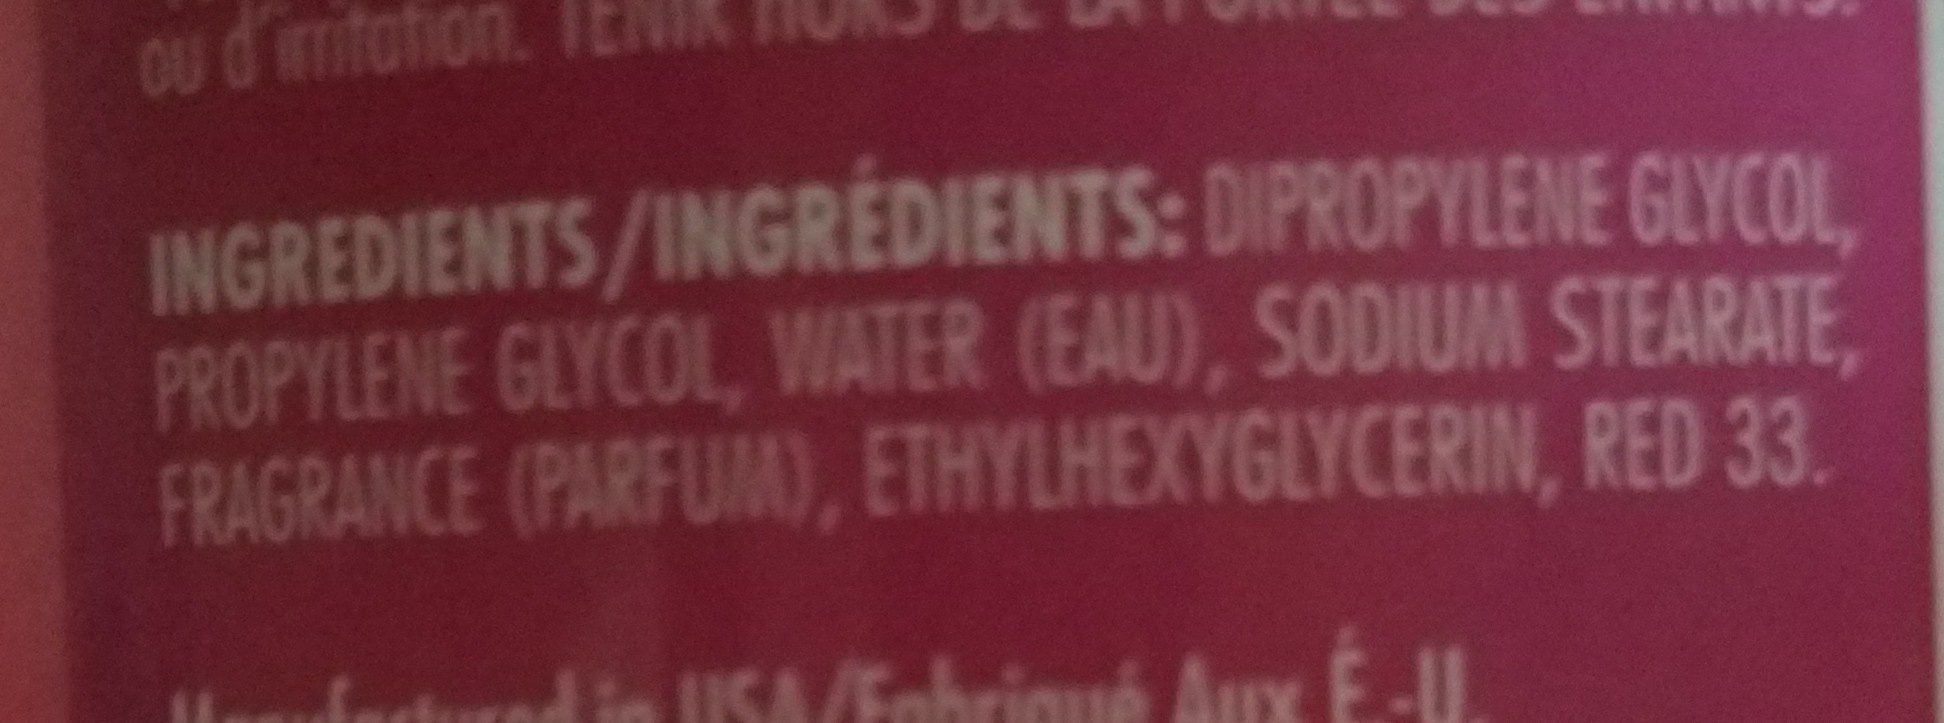 soft & dri deodorant - Ingredients - en